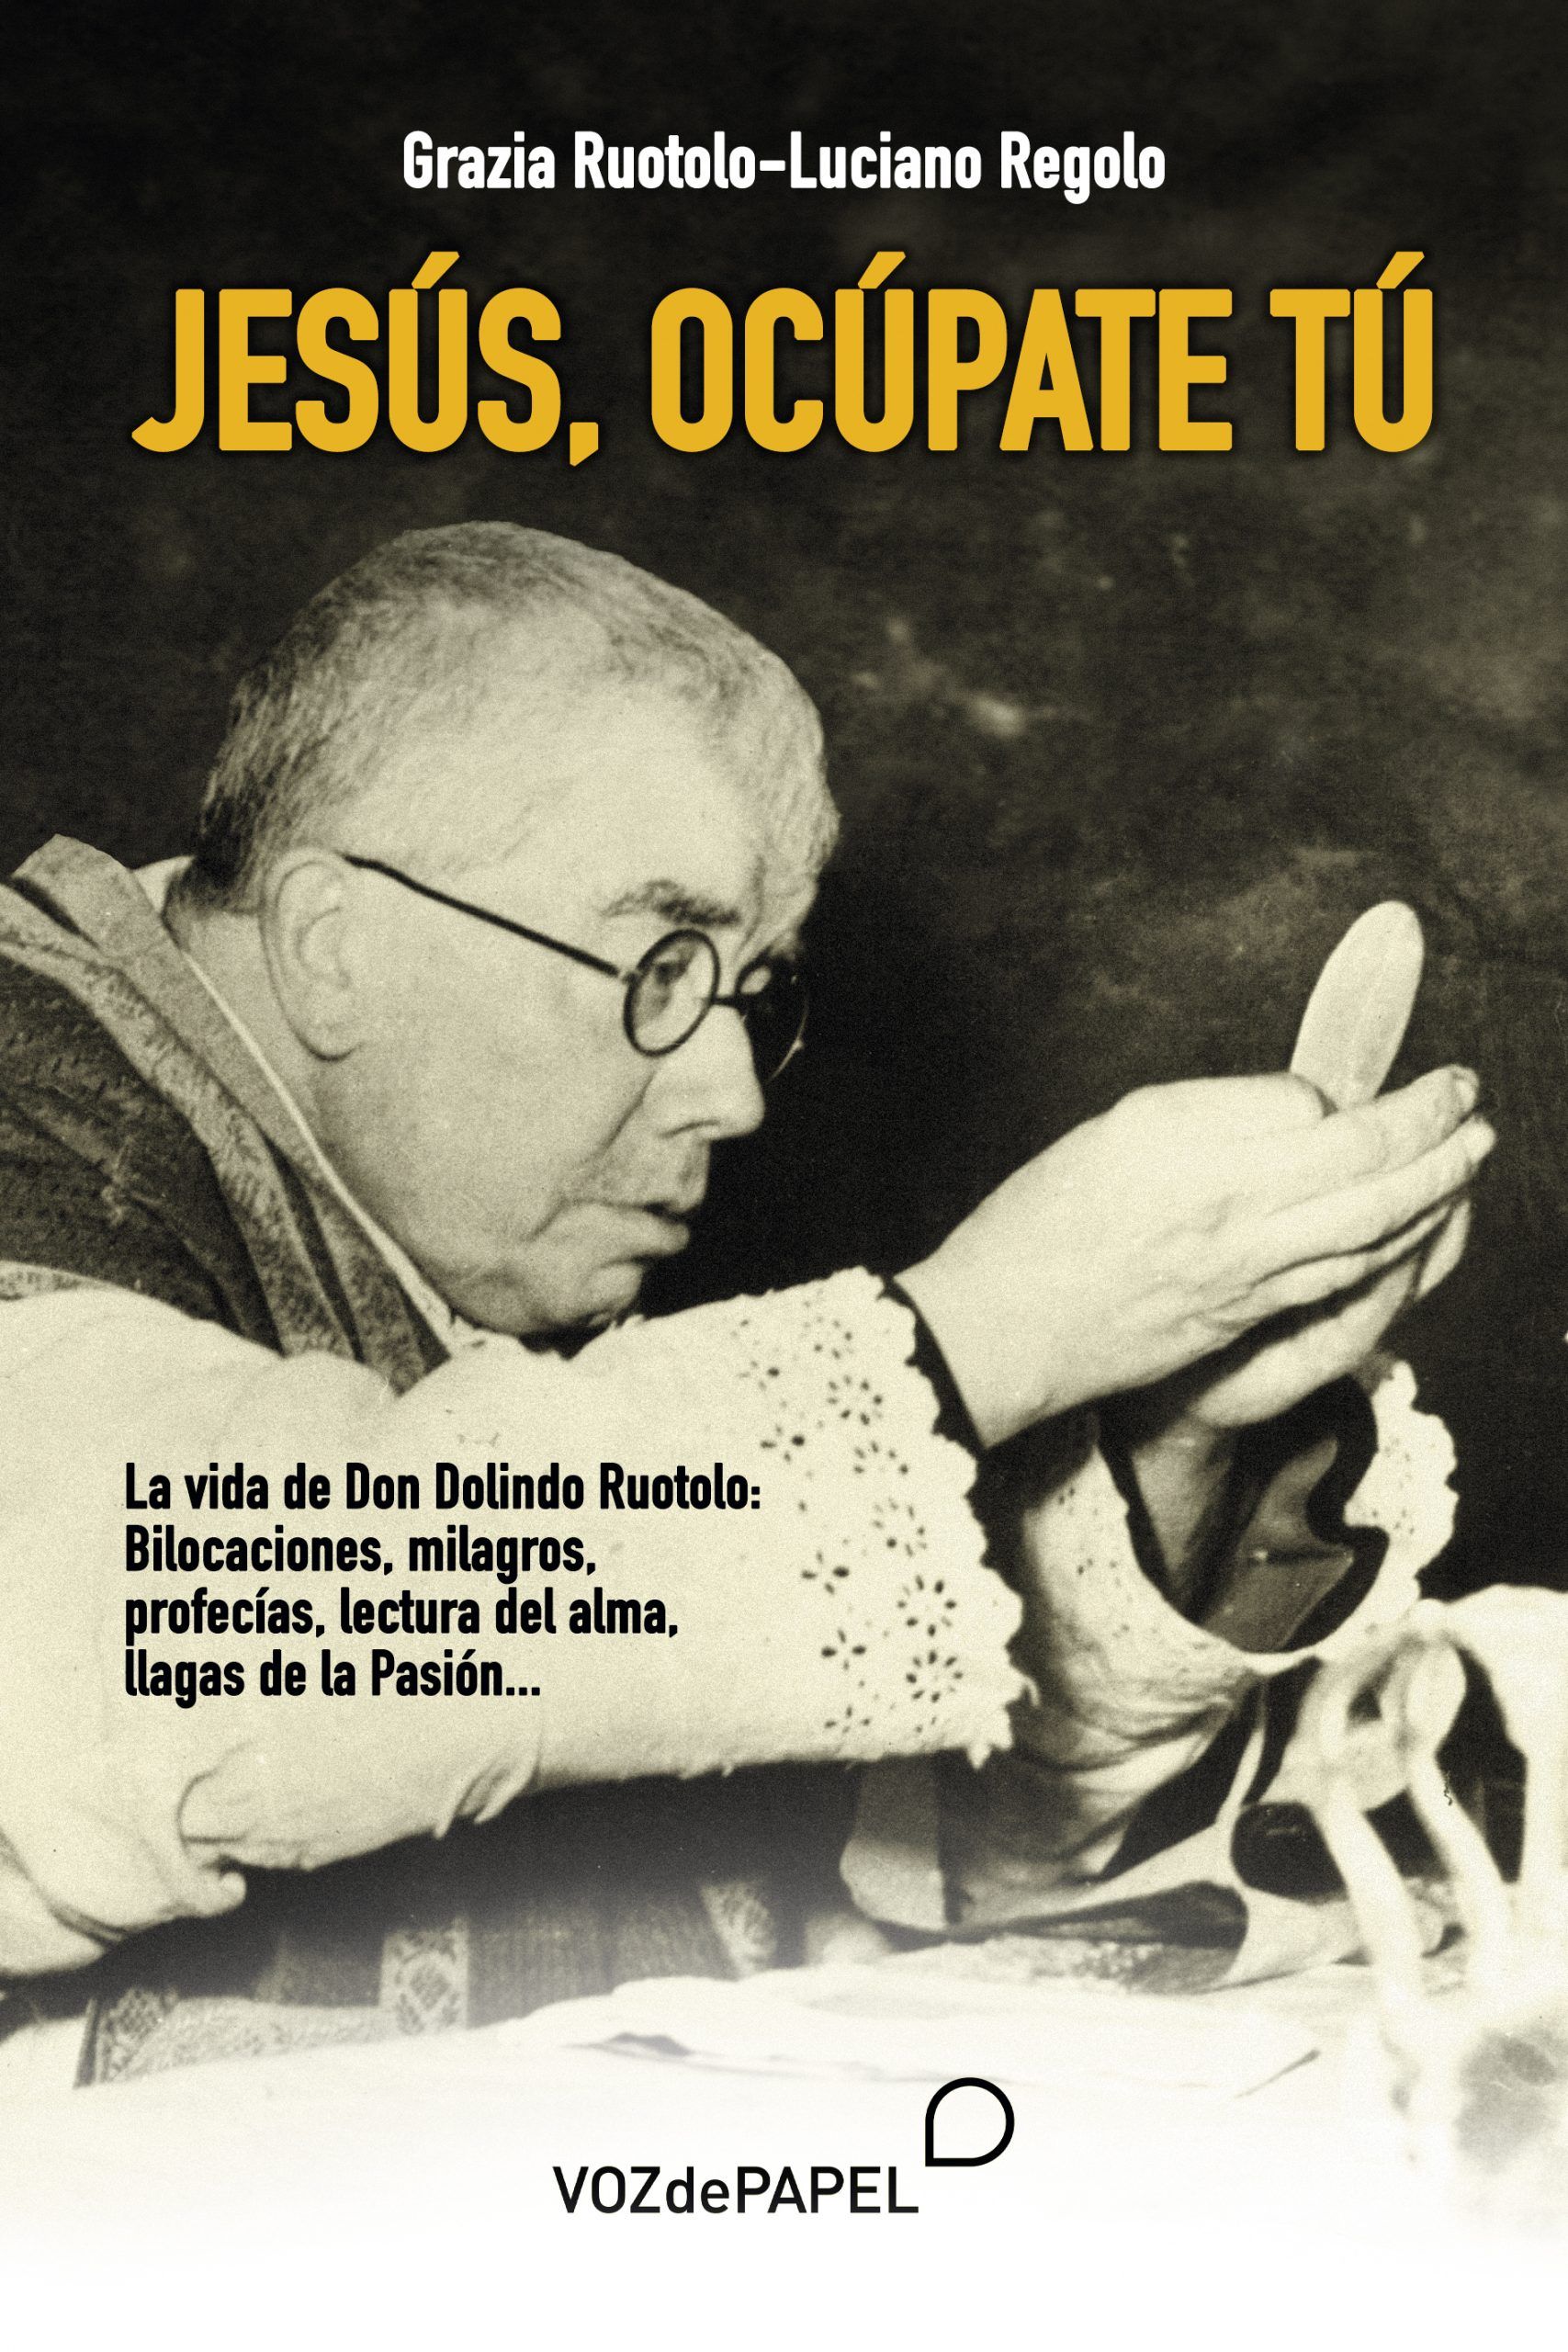 Padre Pío y don Dolindo: dos vidas gemelas llenas de bilocaciones, milagros, conversiones, profecías, llagas de la Pasión…